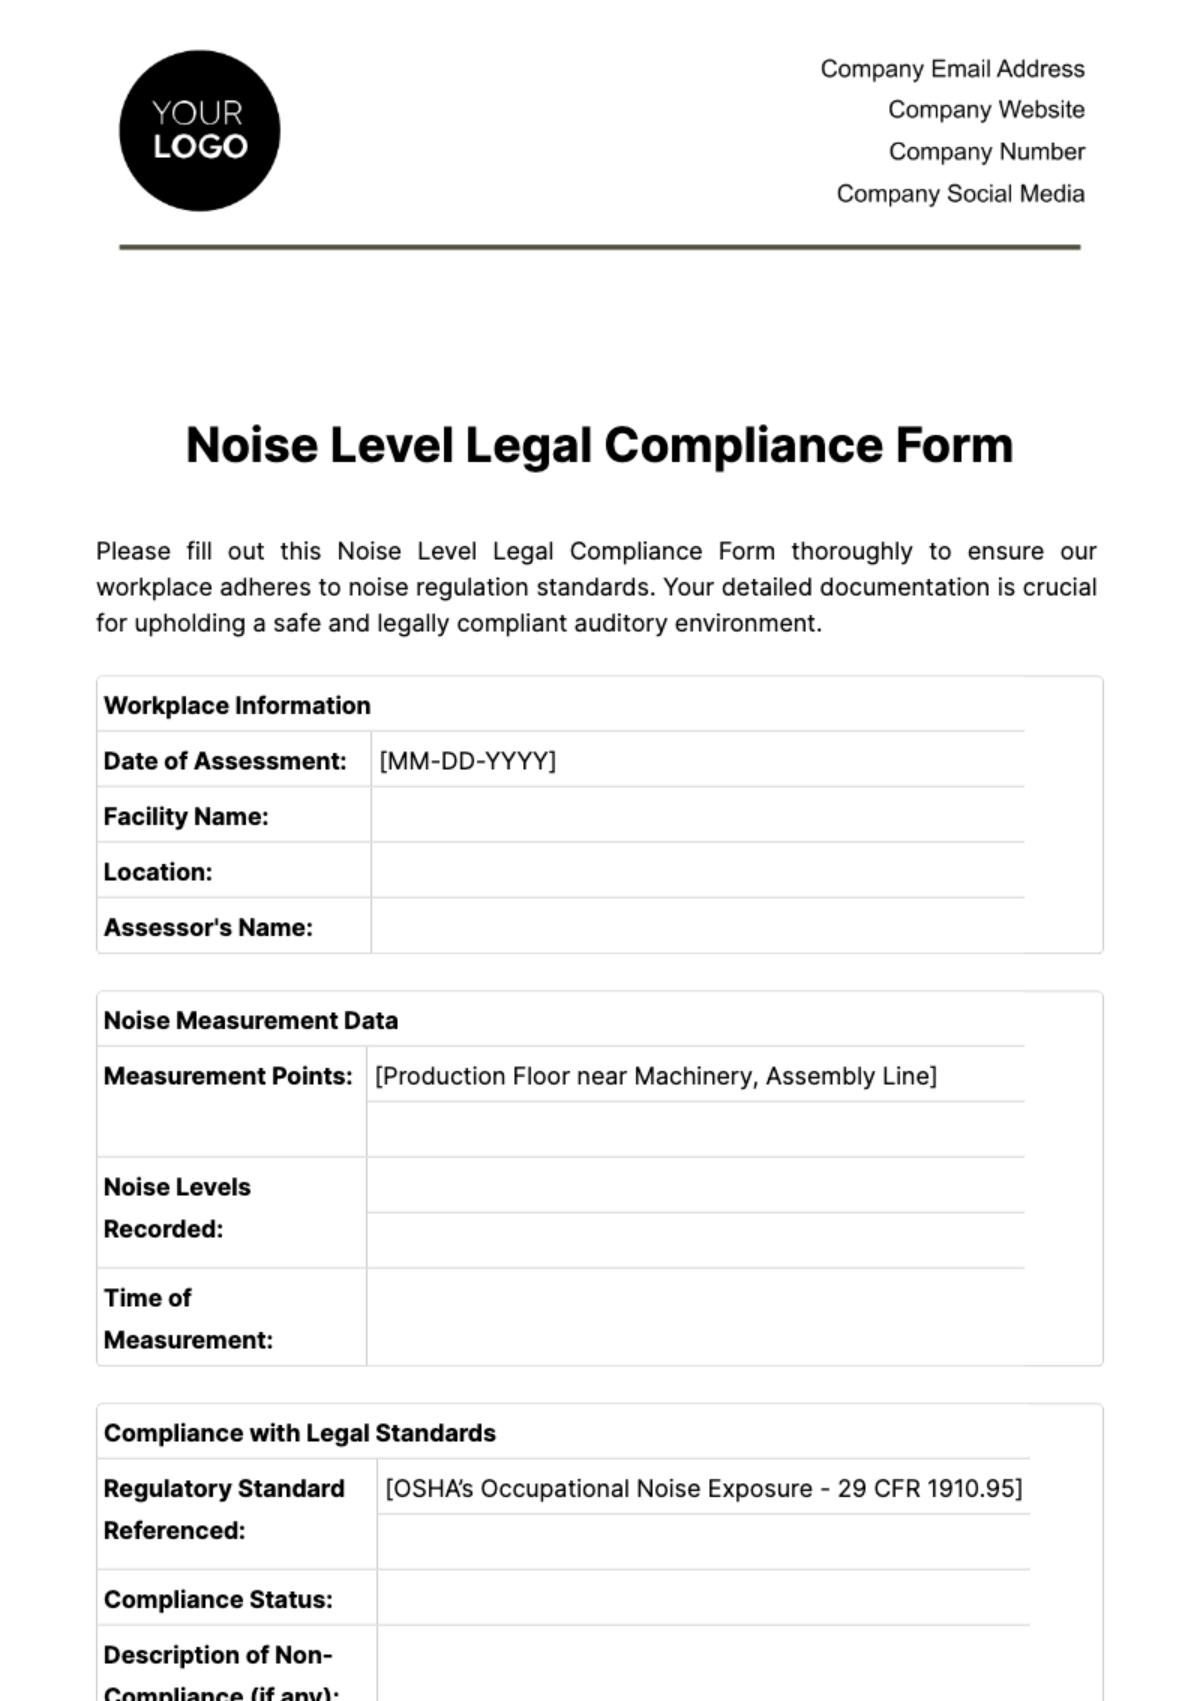 Noise Level Legal Compliance Form Template